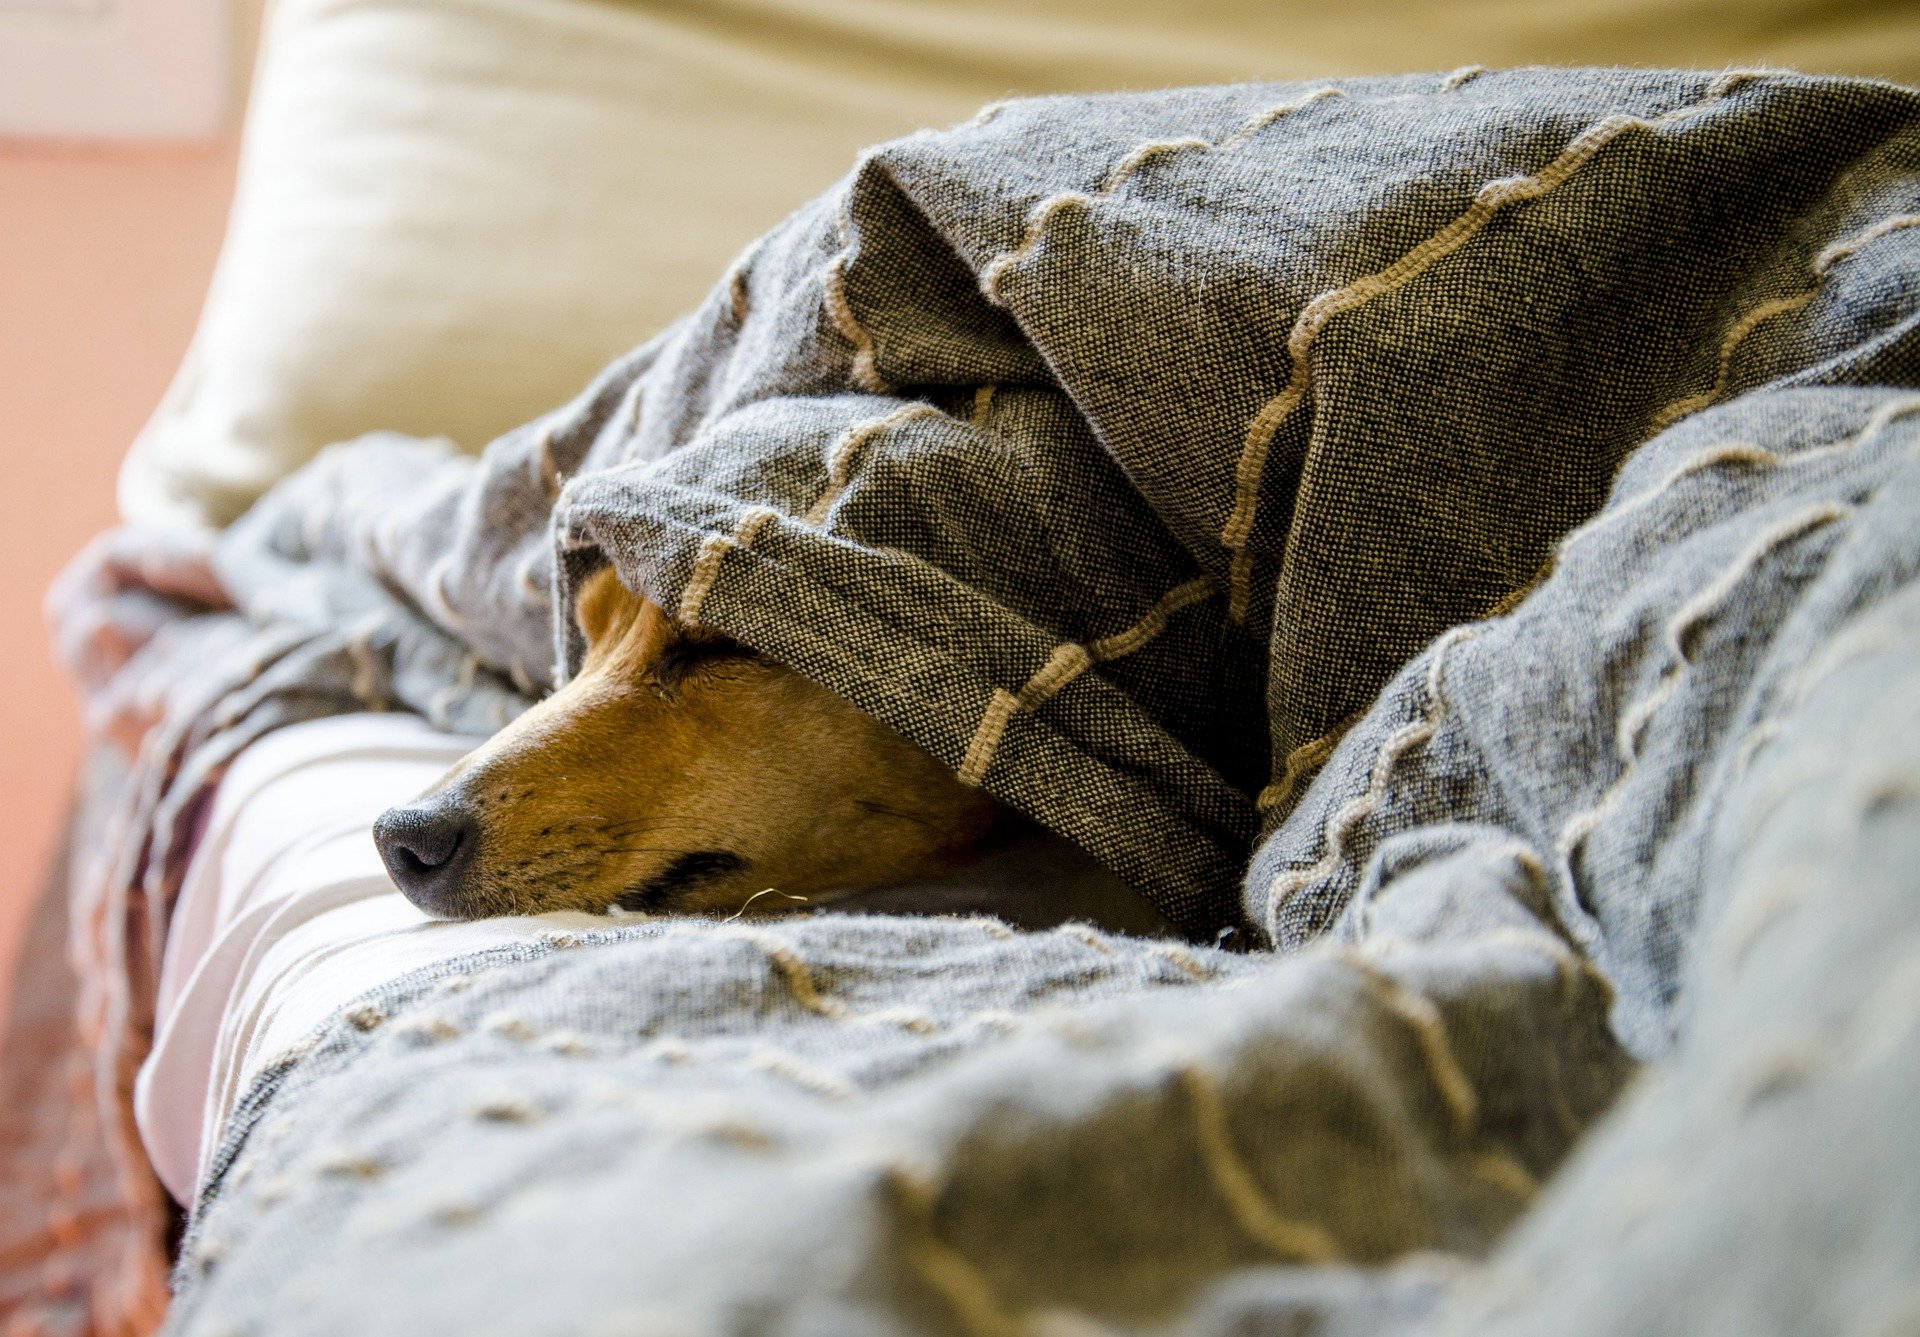 dog mouth sores - dog hiding under blanket